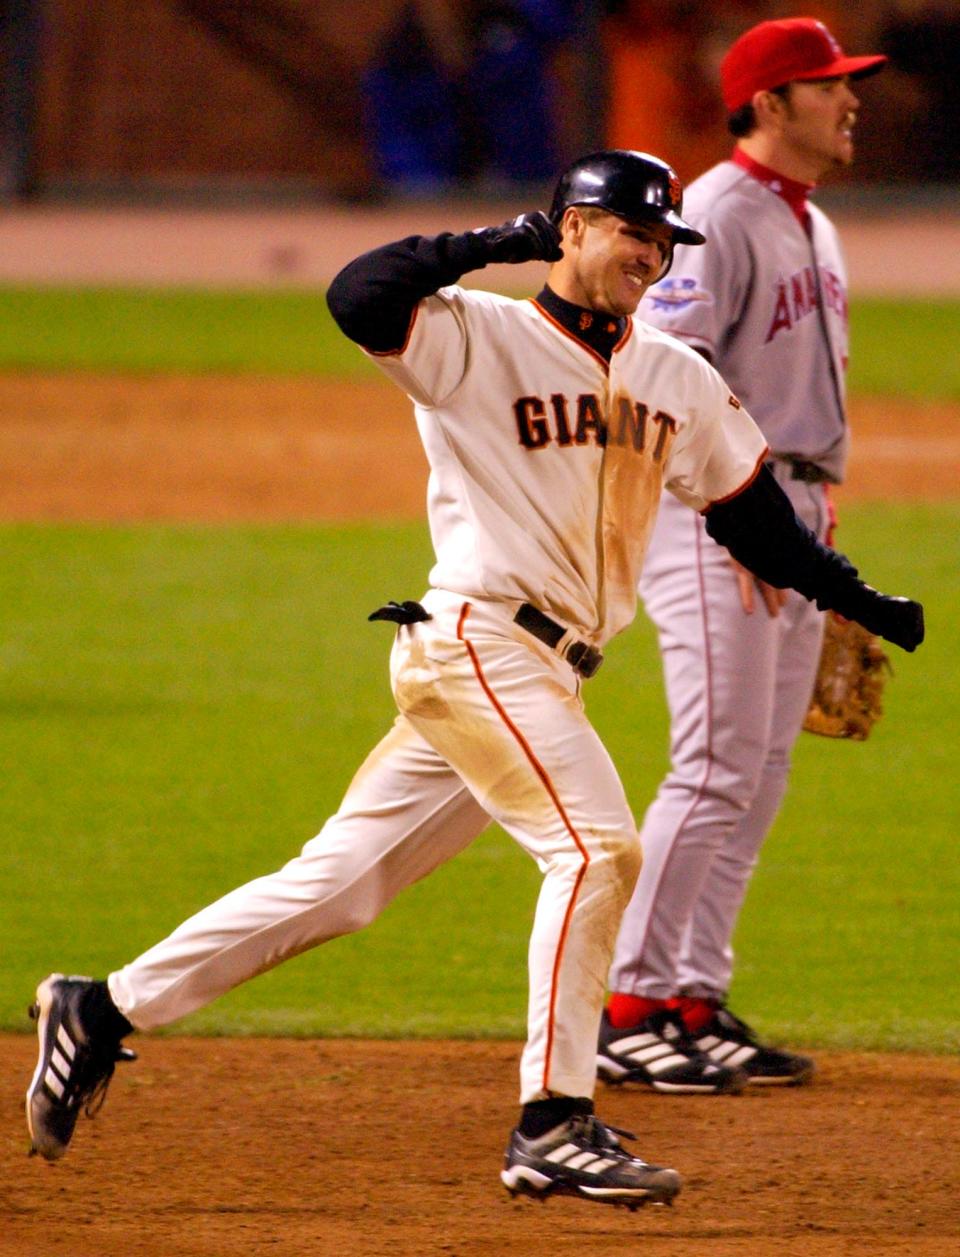 Jeff Kent dari Giants merayakannya dengan melakukan dua run home run melewati baseman pertama Anaheim Angels Scott Spizzio di Game 5 World Series pada tahun 2002.